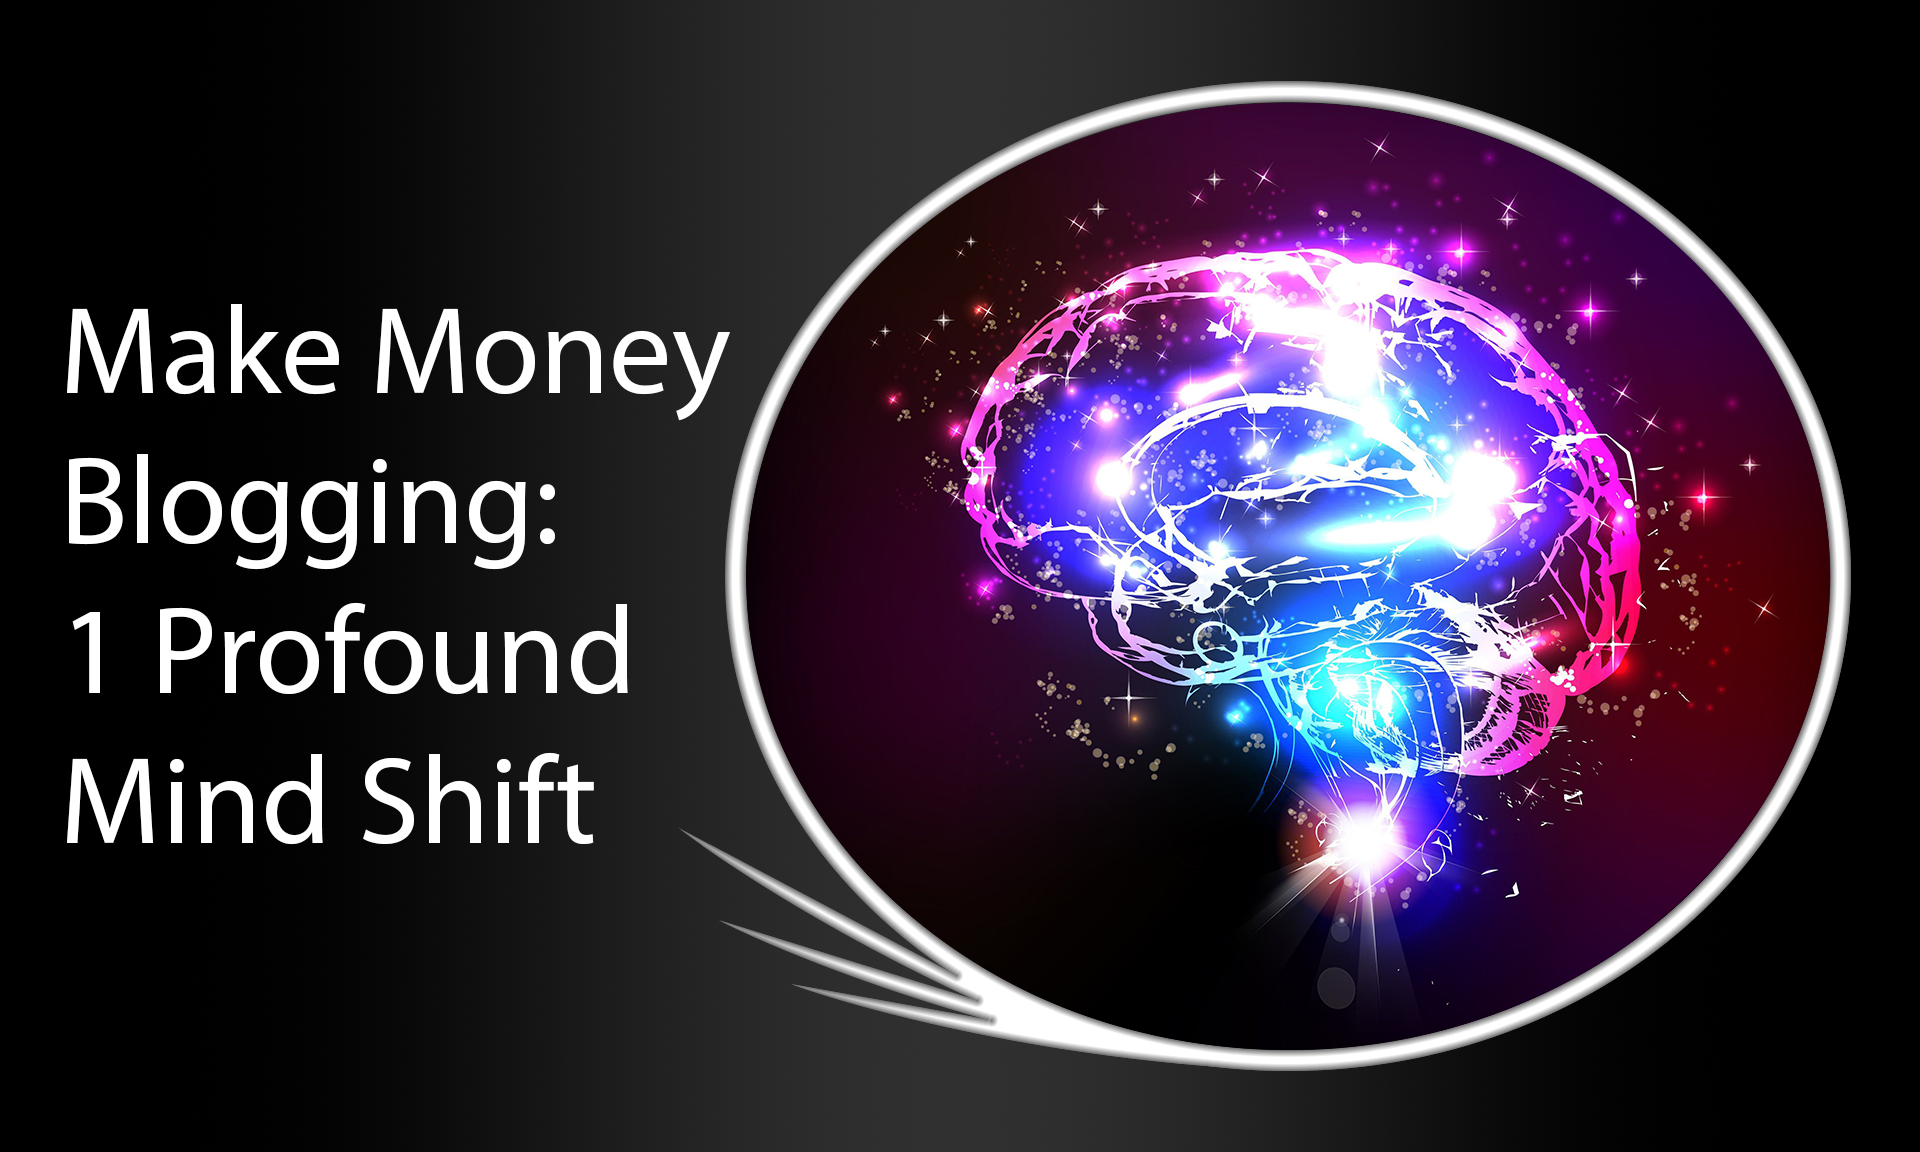 Make Money Blogging: 1 Profound Mind Shift (image of a mind shifting).